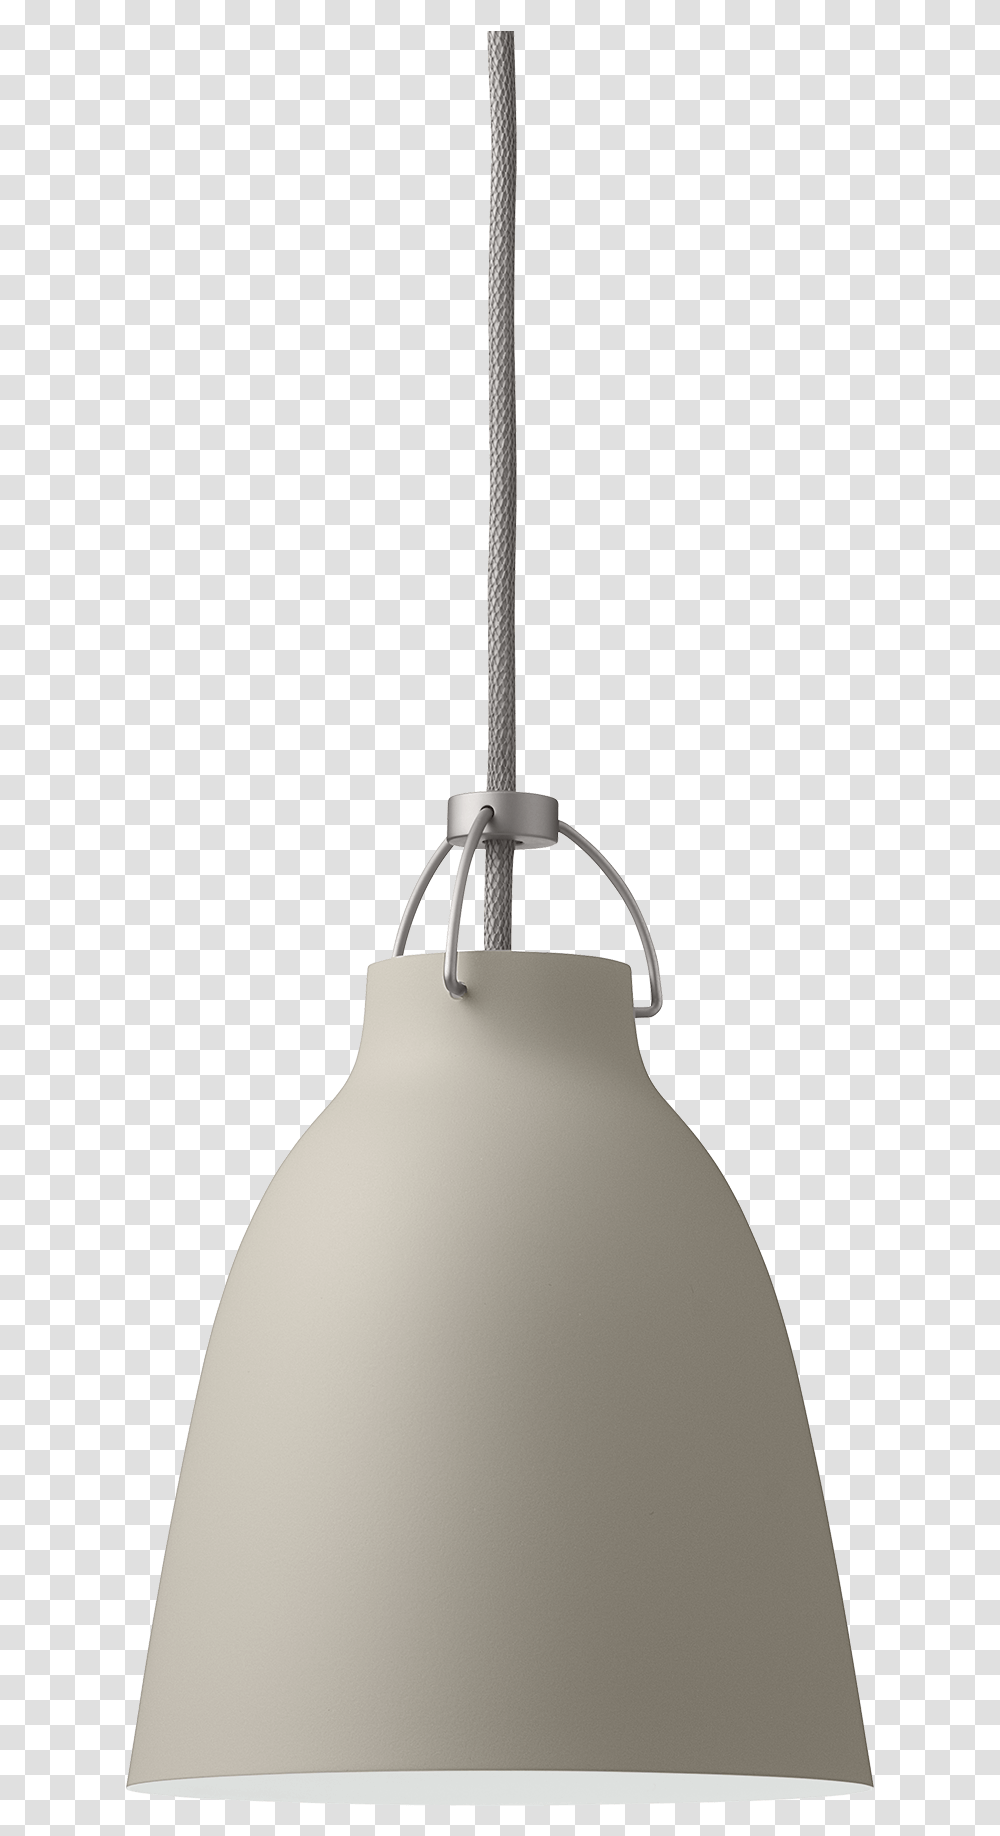 Caravaggio Pendant P1 Caravaggio P1, Lamp, Light Fixture, Lampshade Transparent Png